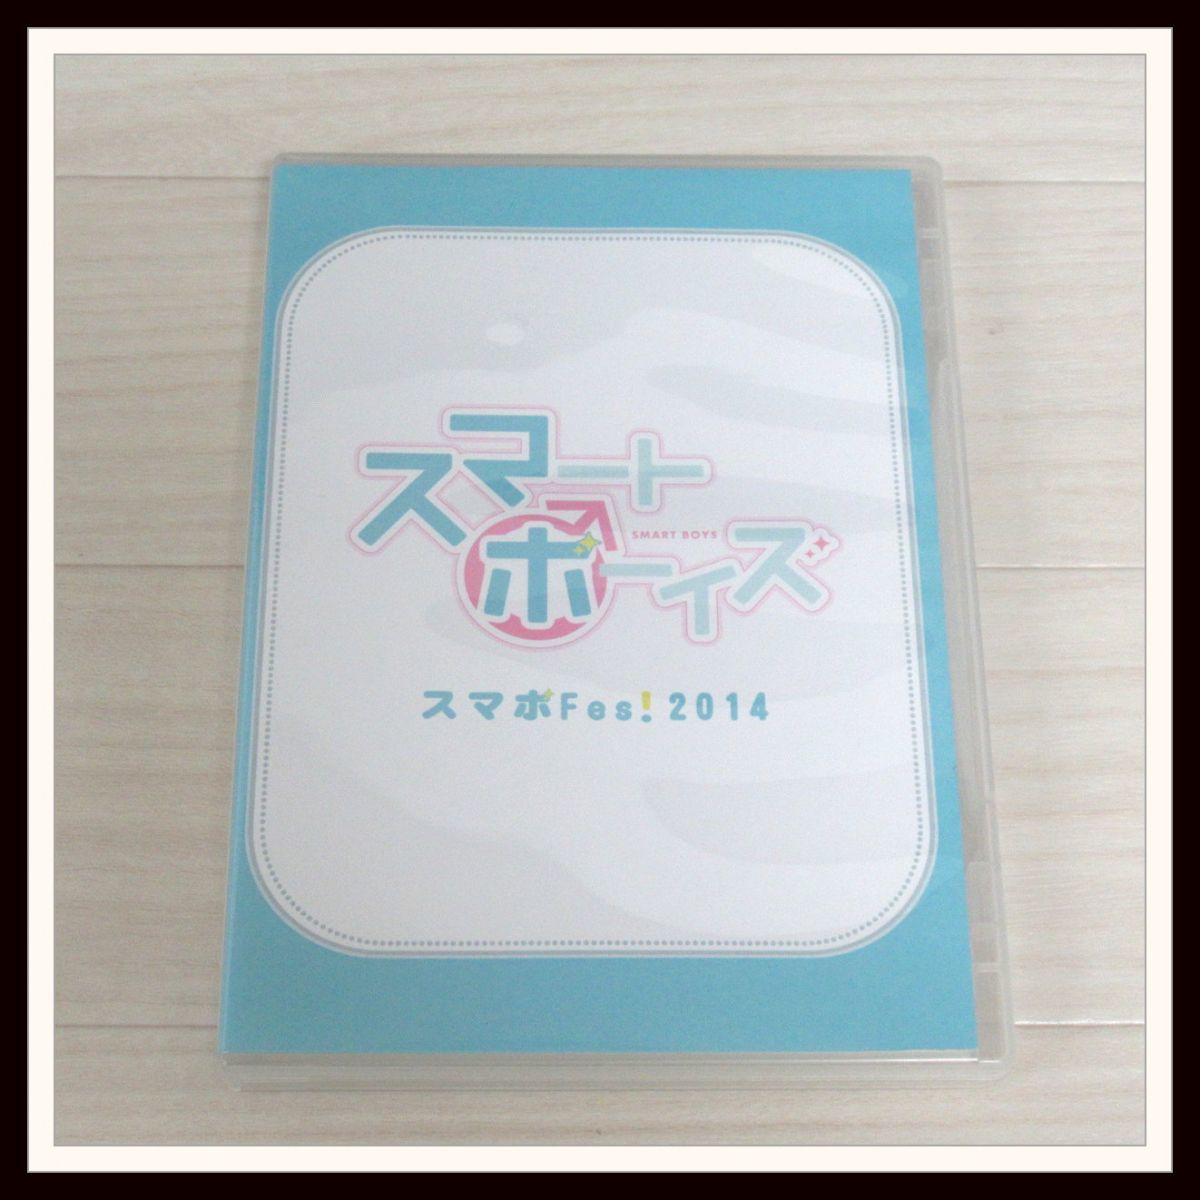 Yahoo!オークション - スマートボーイズ スマボFes!2014 DVD/横浜流星...